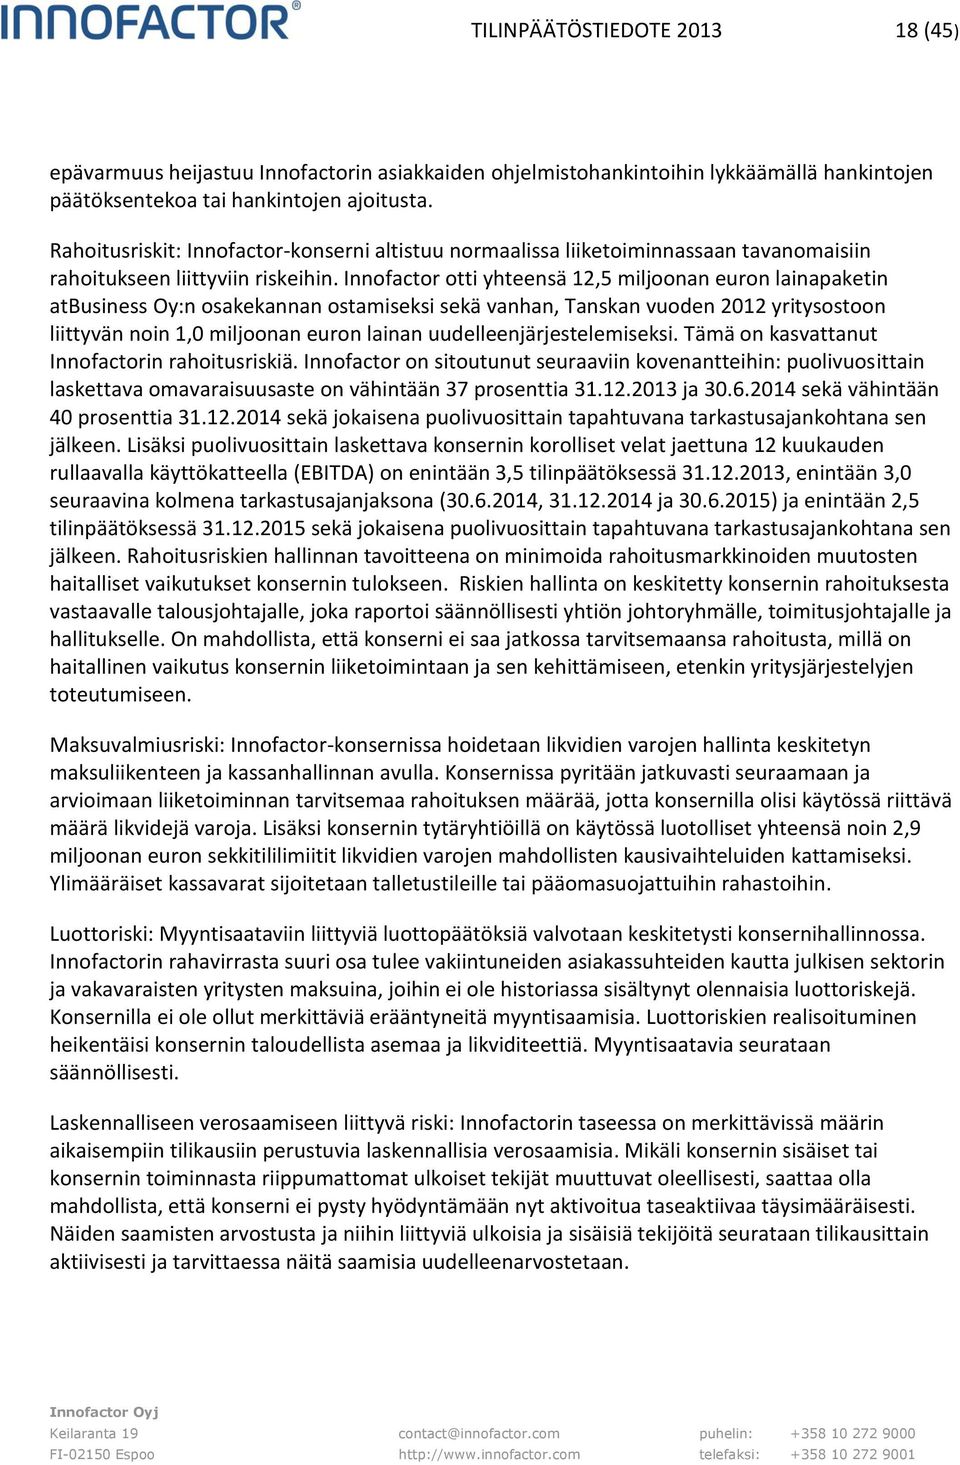 Innofactor otti yhteensä 12,5 miljoonan euron lainapaketin atbusiness Oy:n osakekannan ostamiseksi sekä vanhan, Tanskan vuoden 2012 yritysostoon liittyvän noin 1,0 miljoonan euron lainan